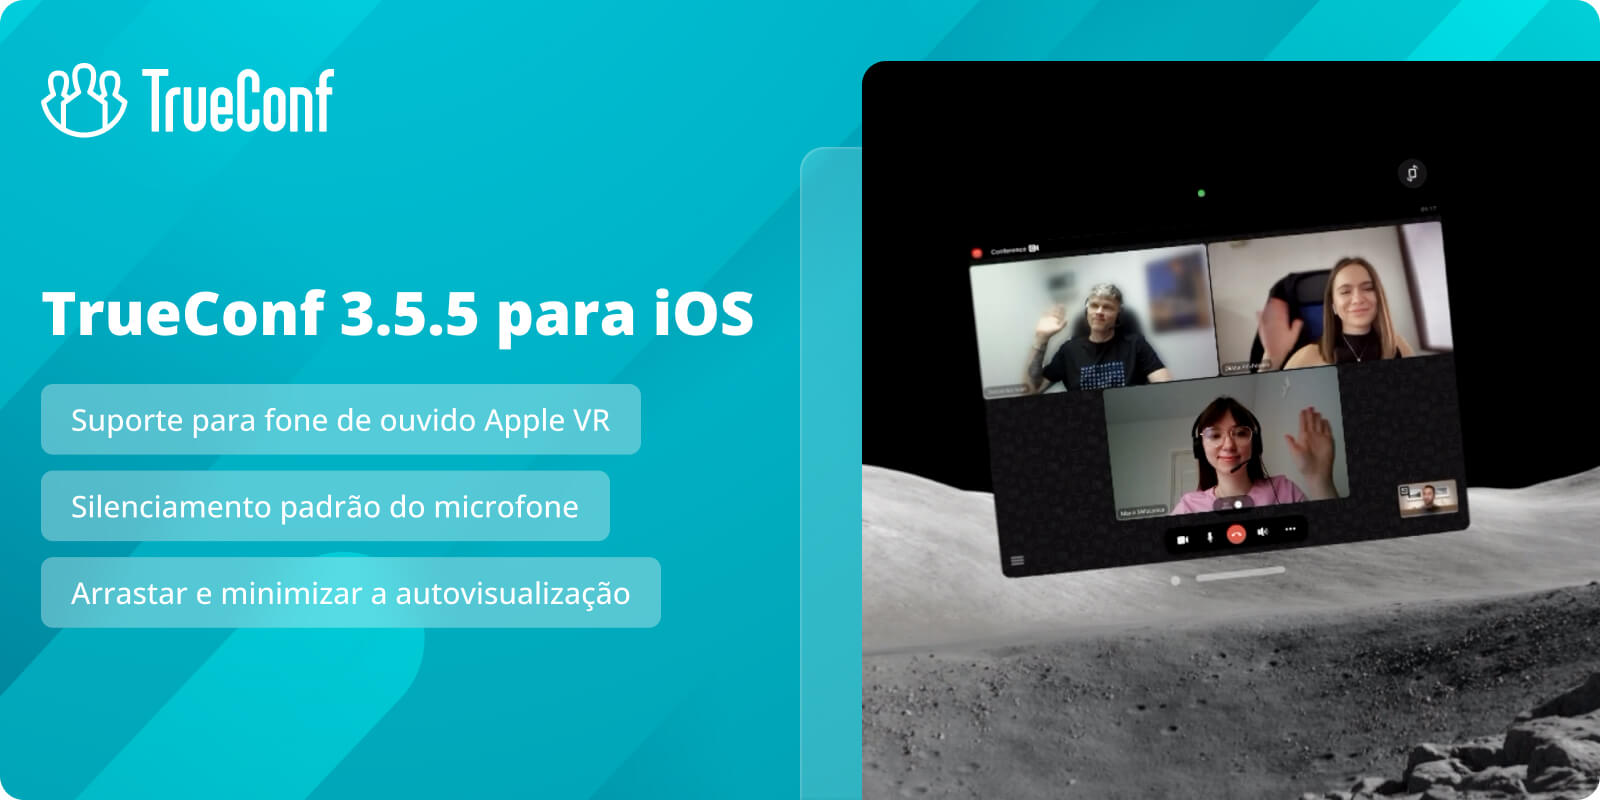 TrueConf 3.5.5 para iOS: suporte para Apple Vision Pro e silenciamento de microfone padrão 1